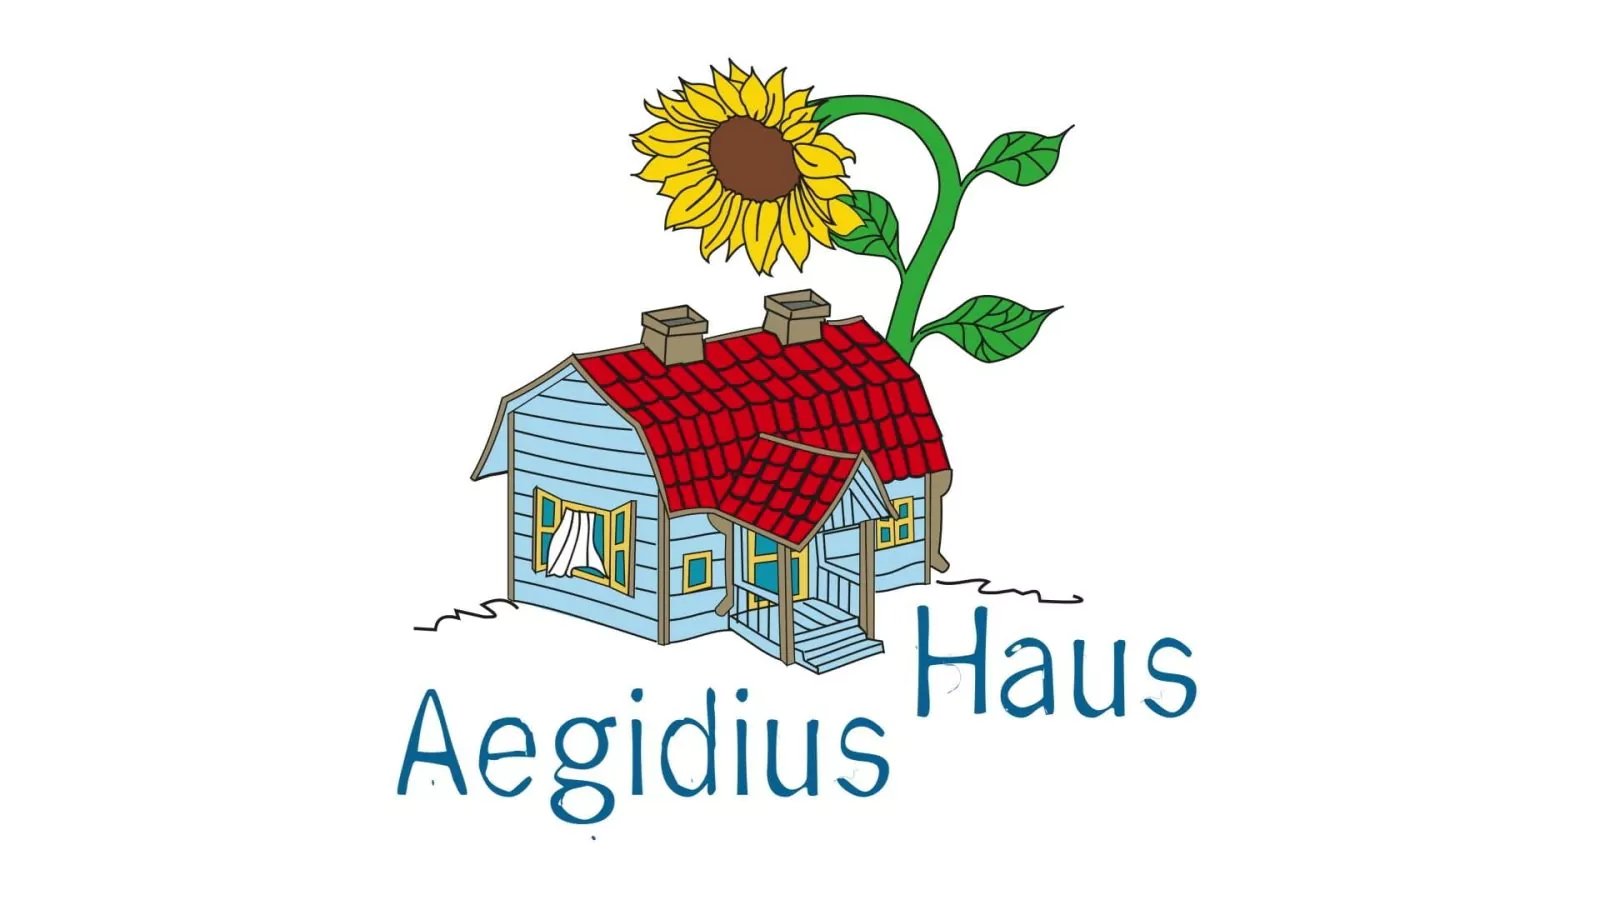 Best Company Video Gmbh Aegidius Haus Auf Der Bult Imagefilm 2019